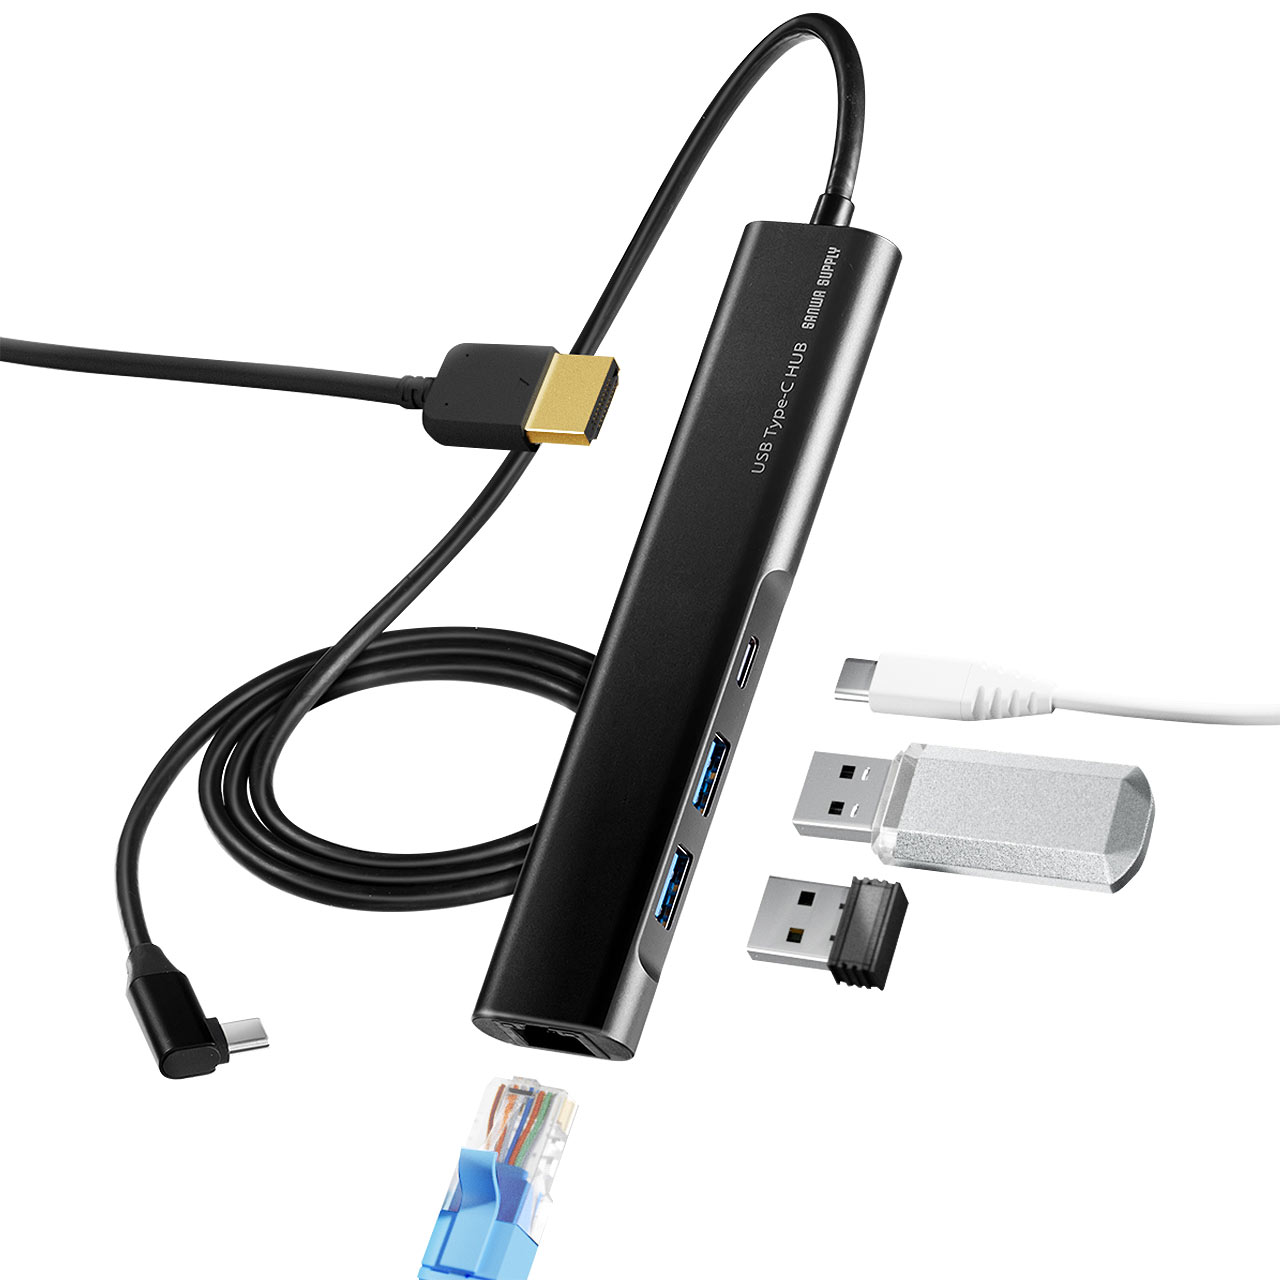 ドッキングステーション USB-C HDMI 4K L字が使いやすい ケーブル長1m  有線LAN対応 モバイルドッキングステーション 400-HUBC8BK